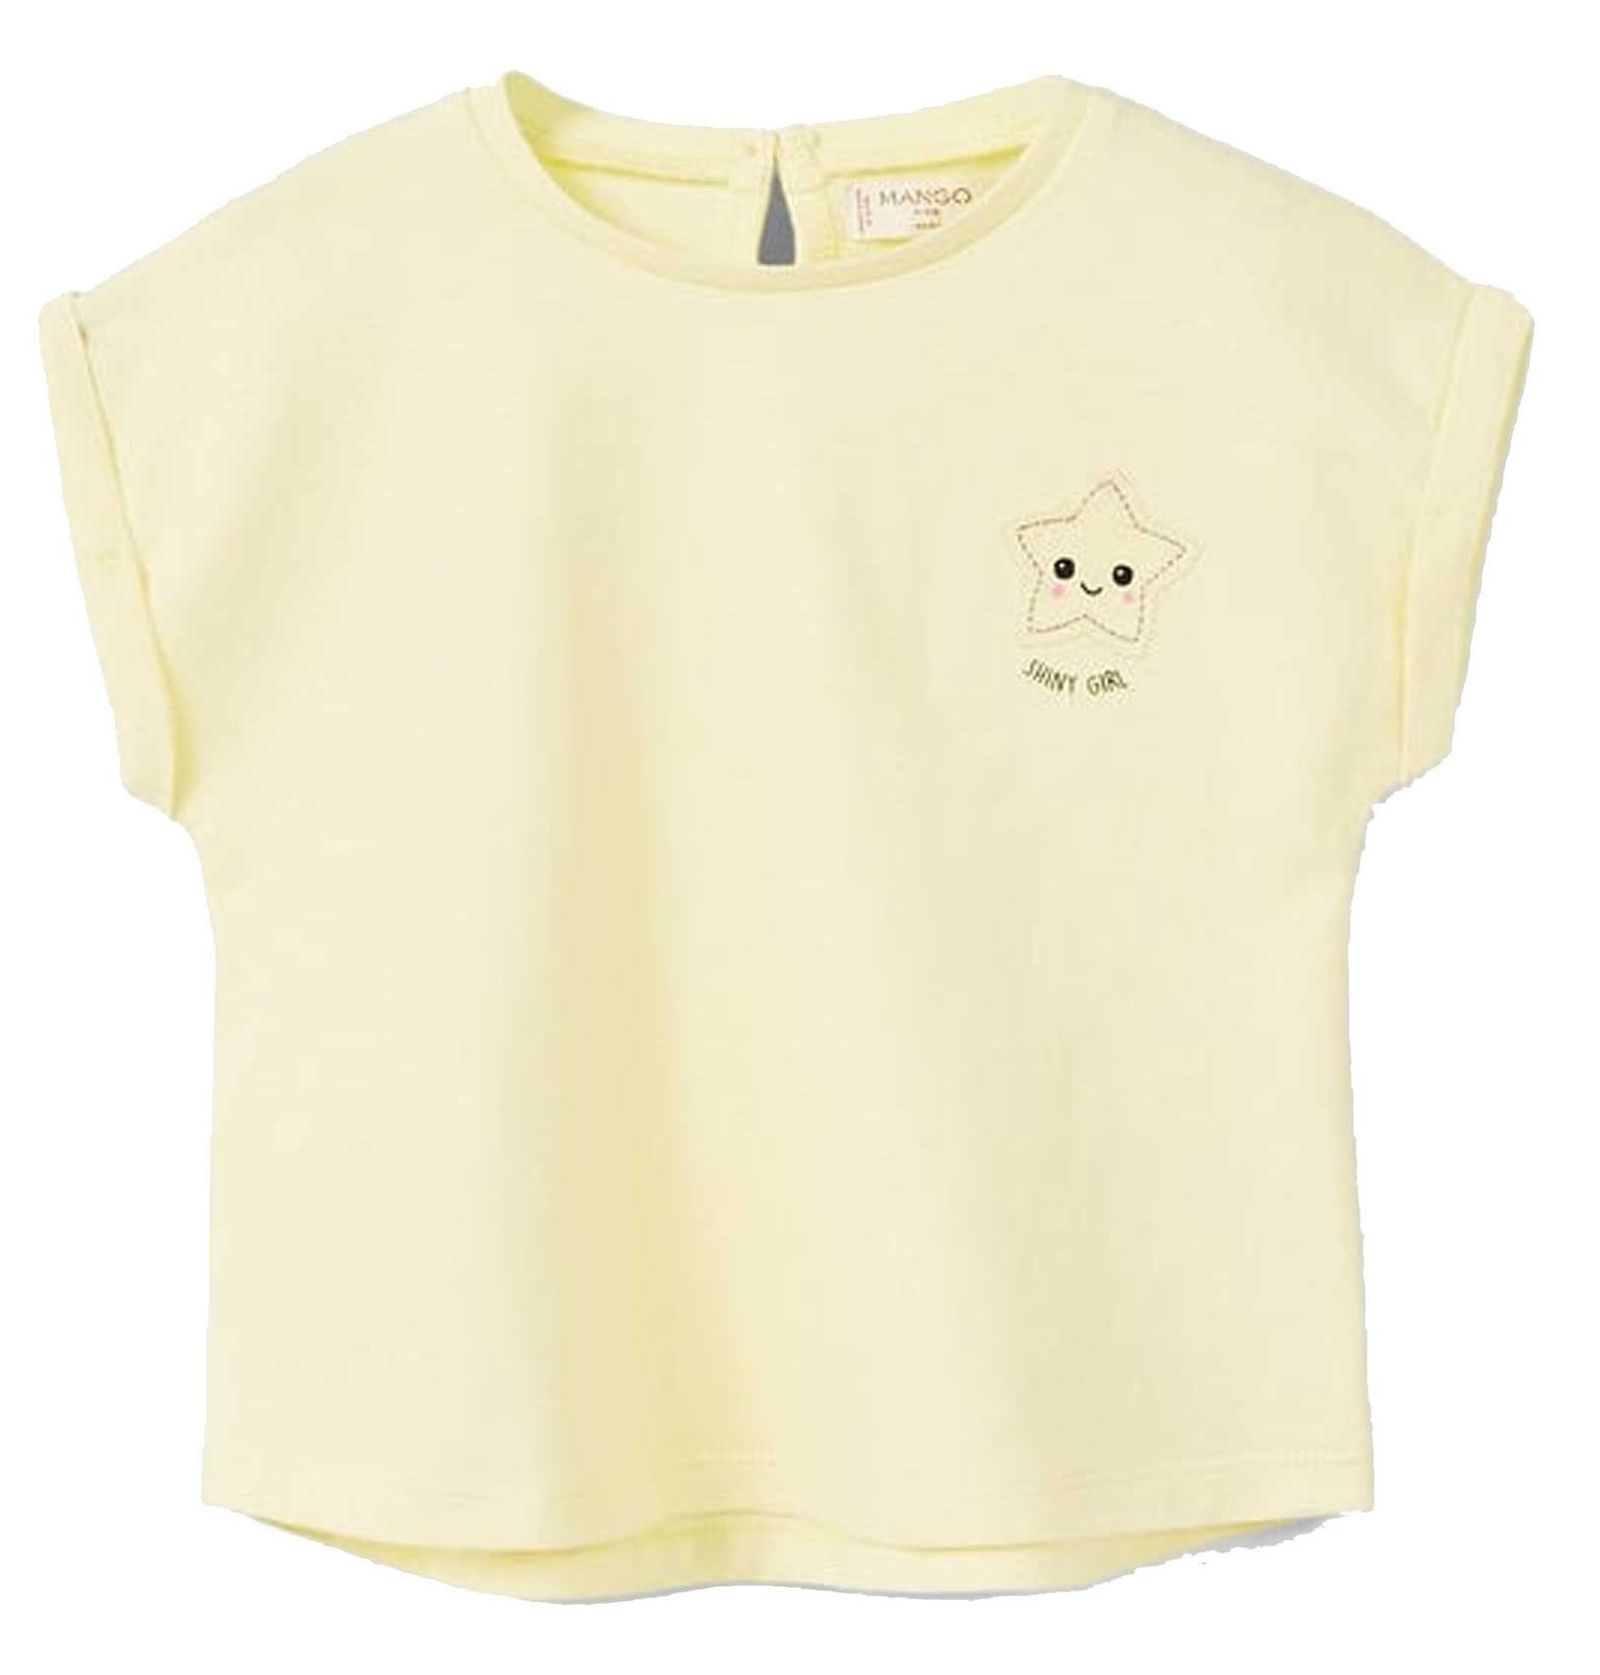 تی شرت نخی یقه گرد دخترانه - مانگو - زرد - 2